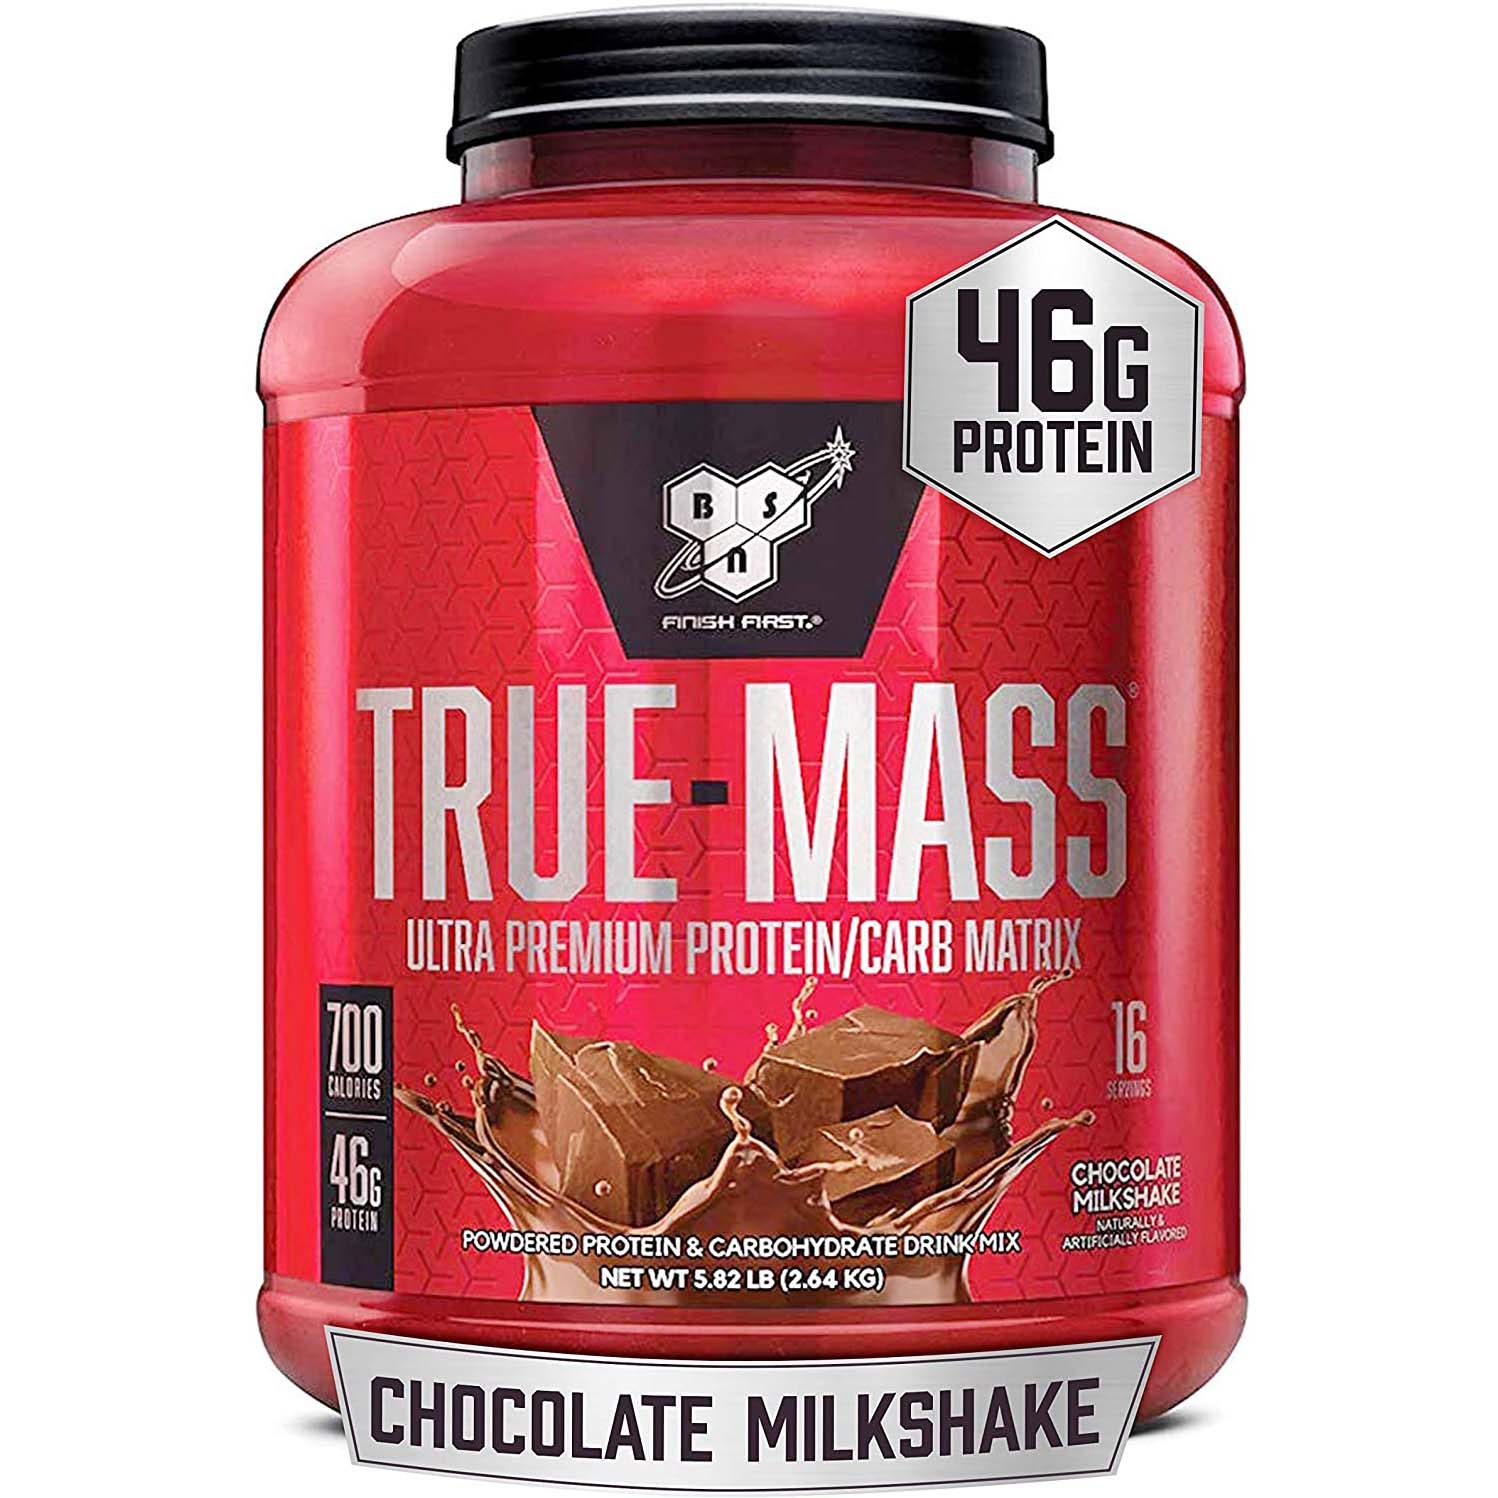 Bsn True mass Weight Gainer, Chocolate Milkshake, 5.82 Lb